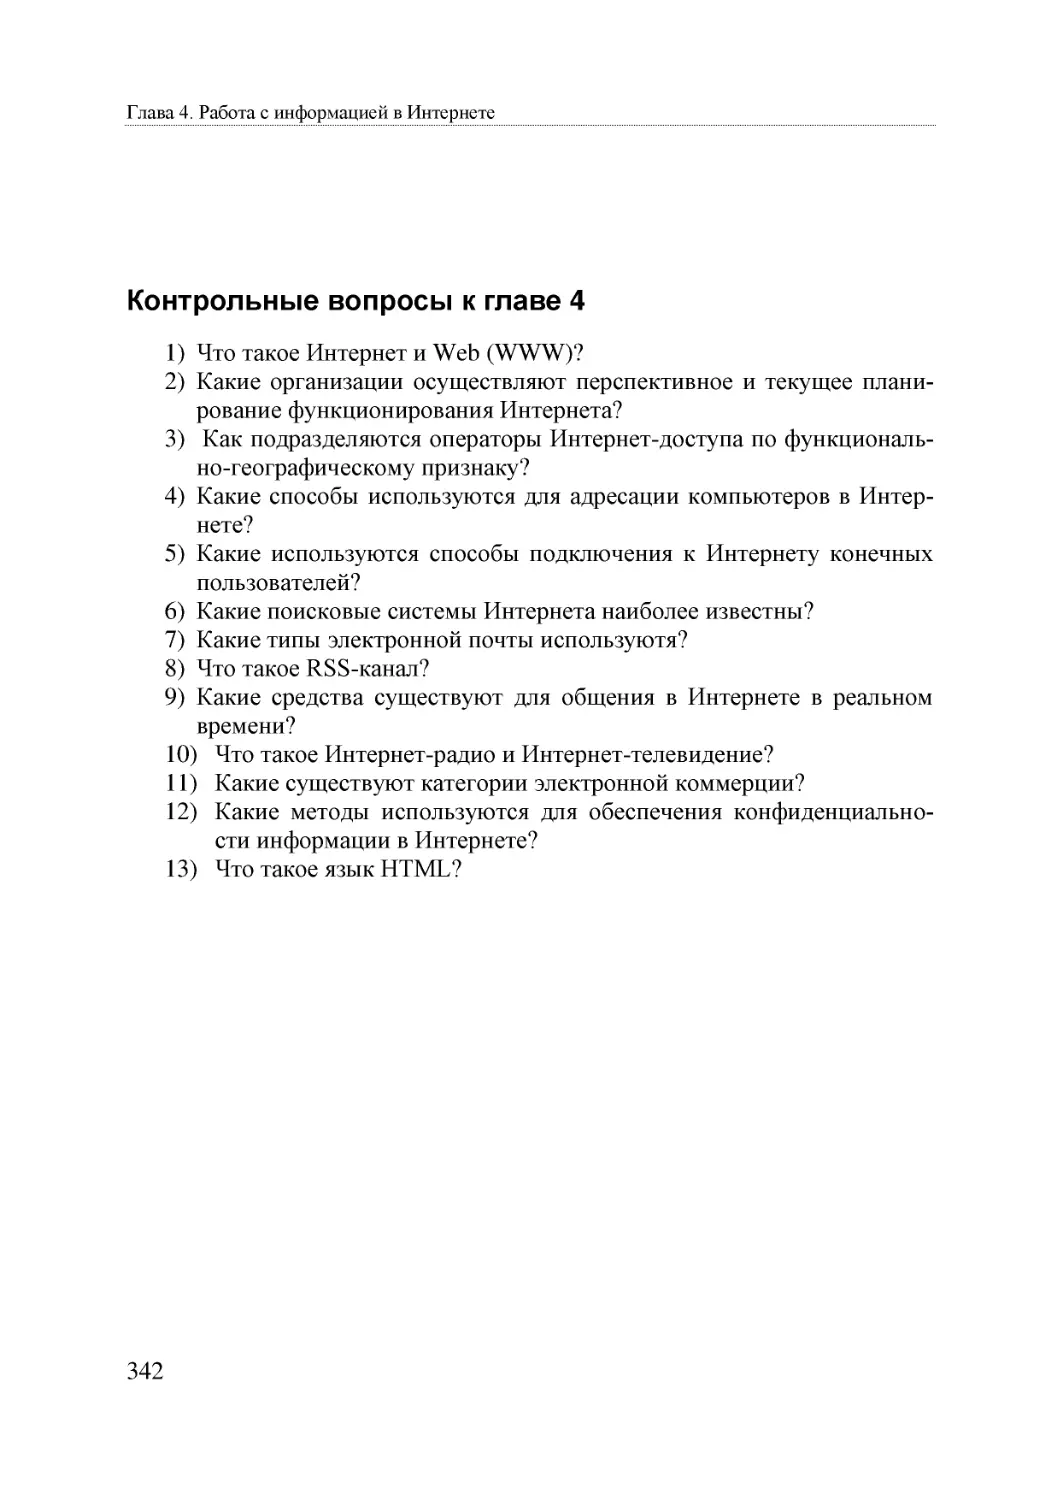 Informatika_Uchebnik_dlya_vuzov_2010 342